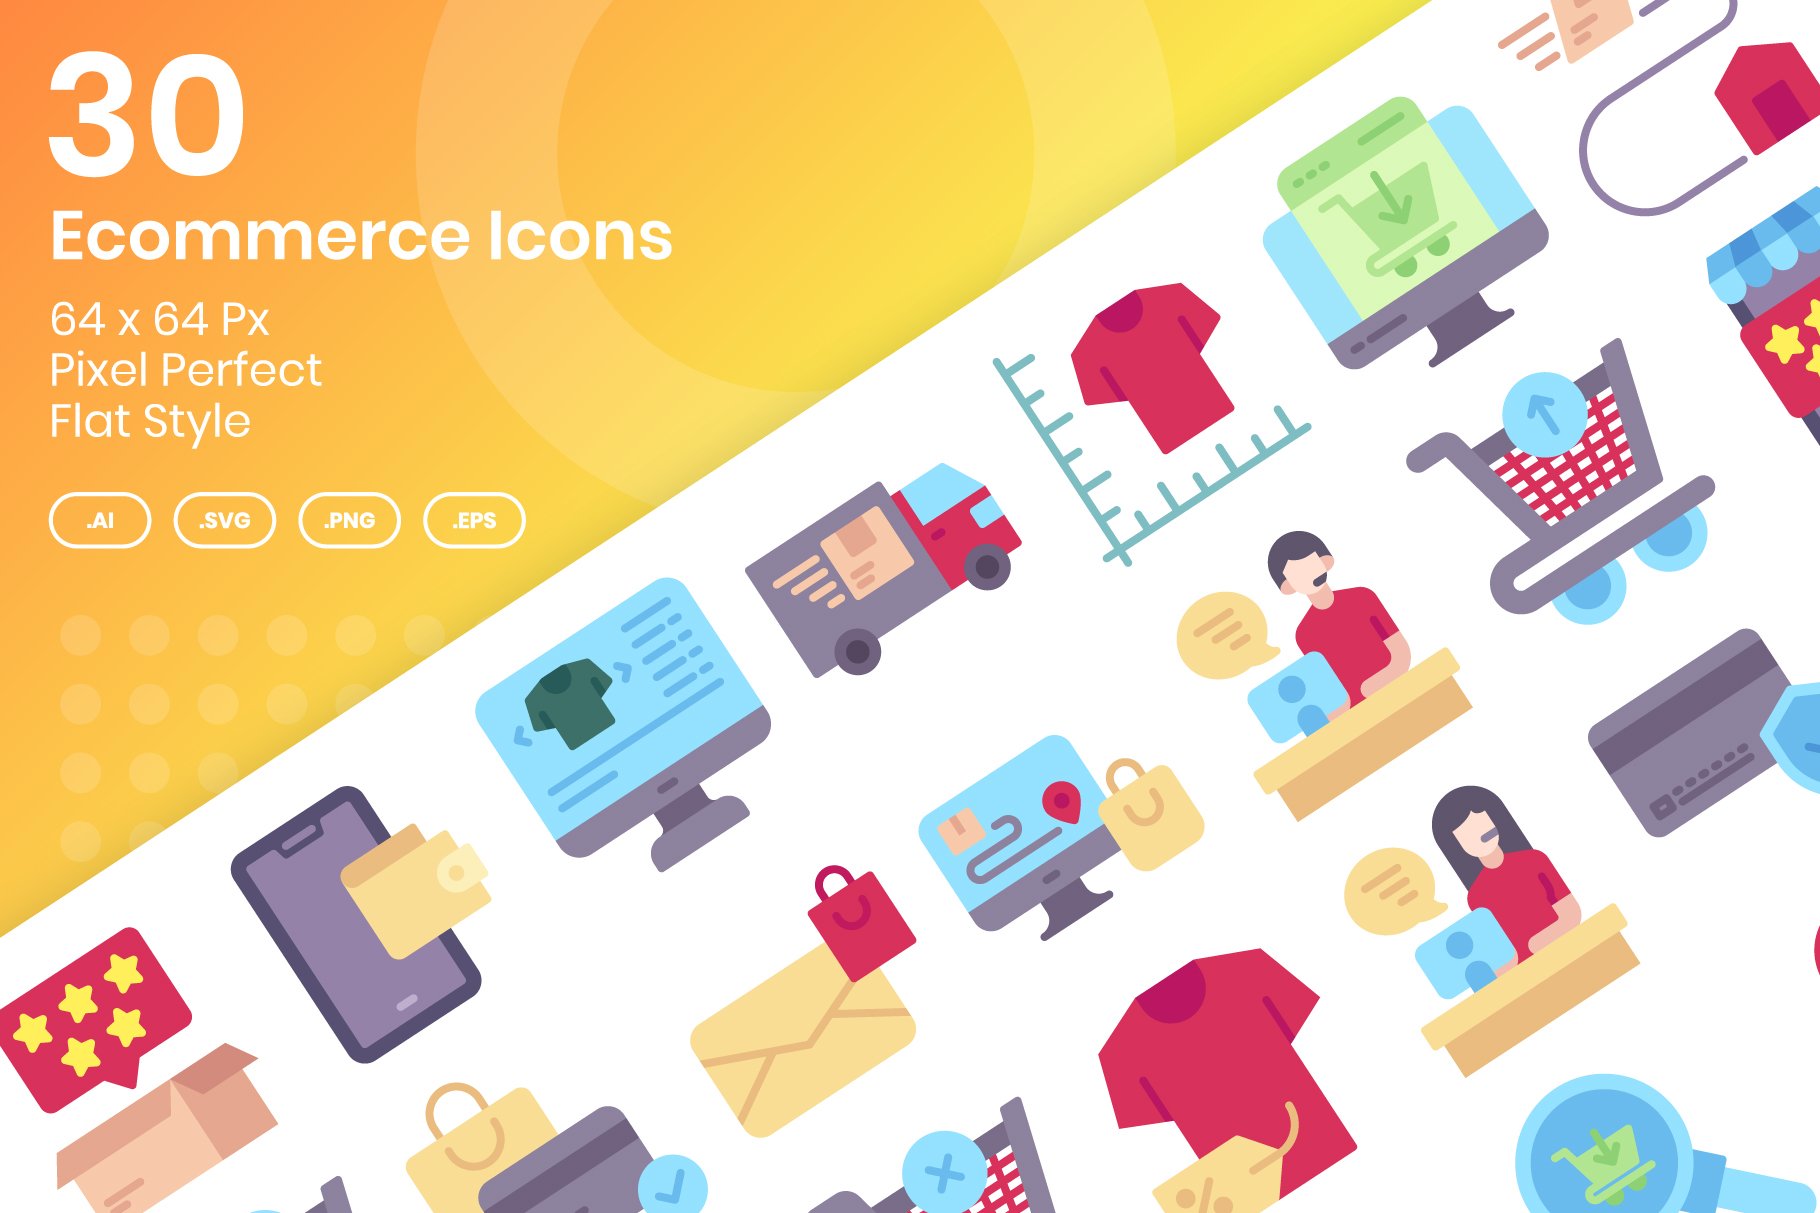 30 Ecommerce Icons Set - Flat cover image.